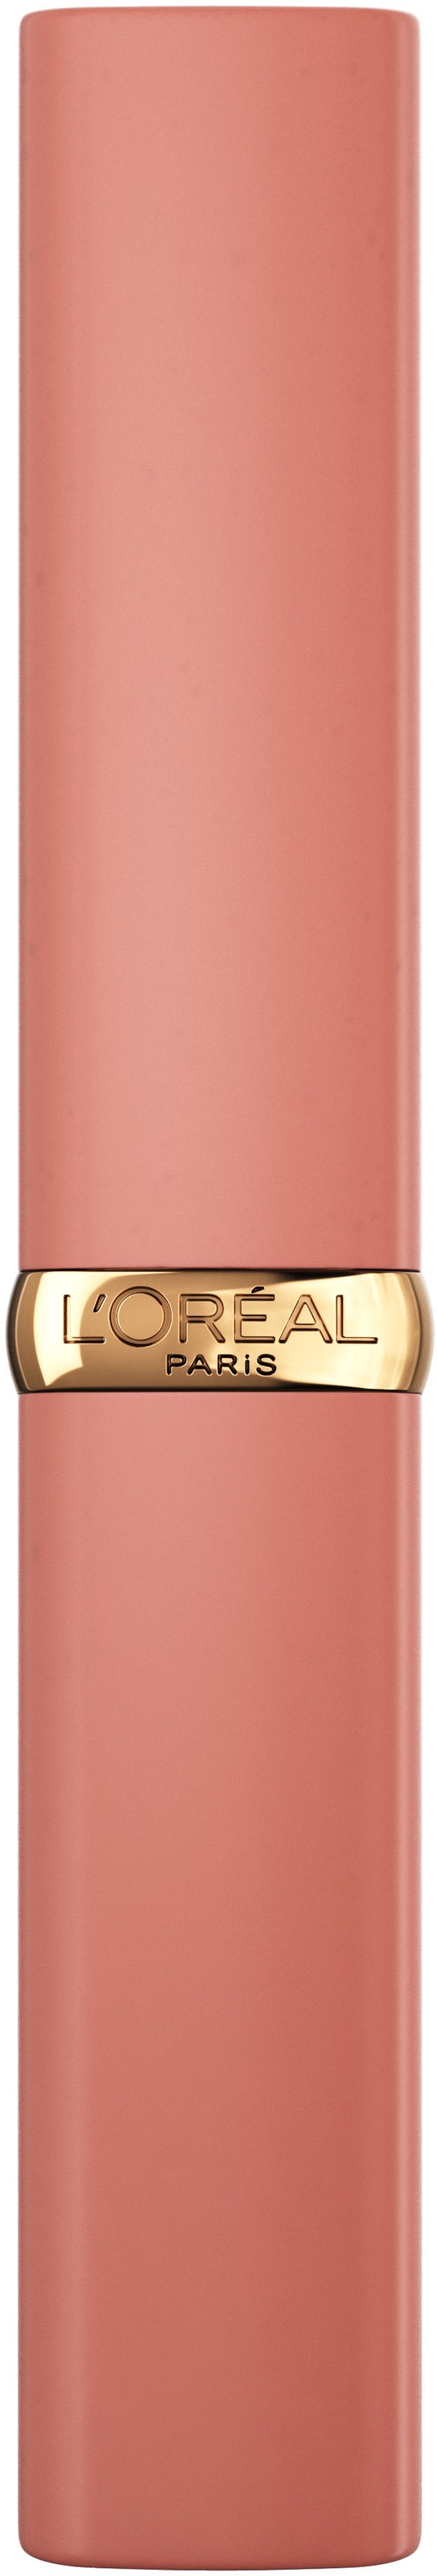 L\'ORÉAL PARIS UNIVERSAL »Color Volume Matte« Intense Lippenpflegestift kaufen | Riche